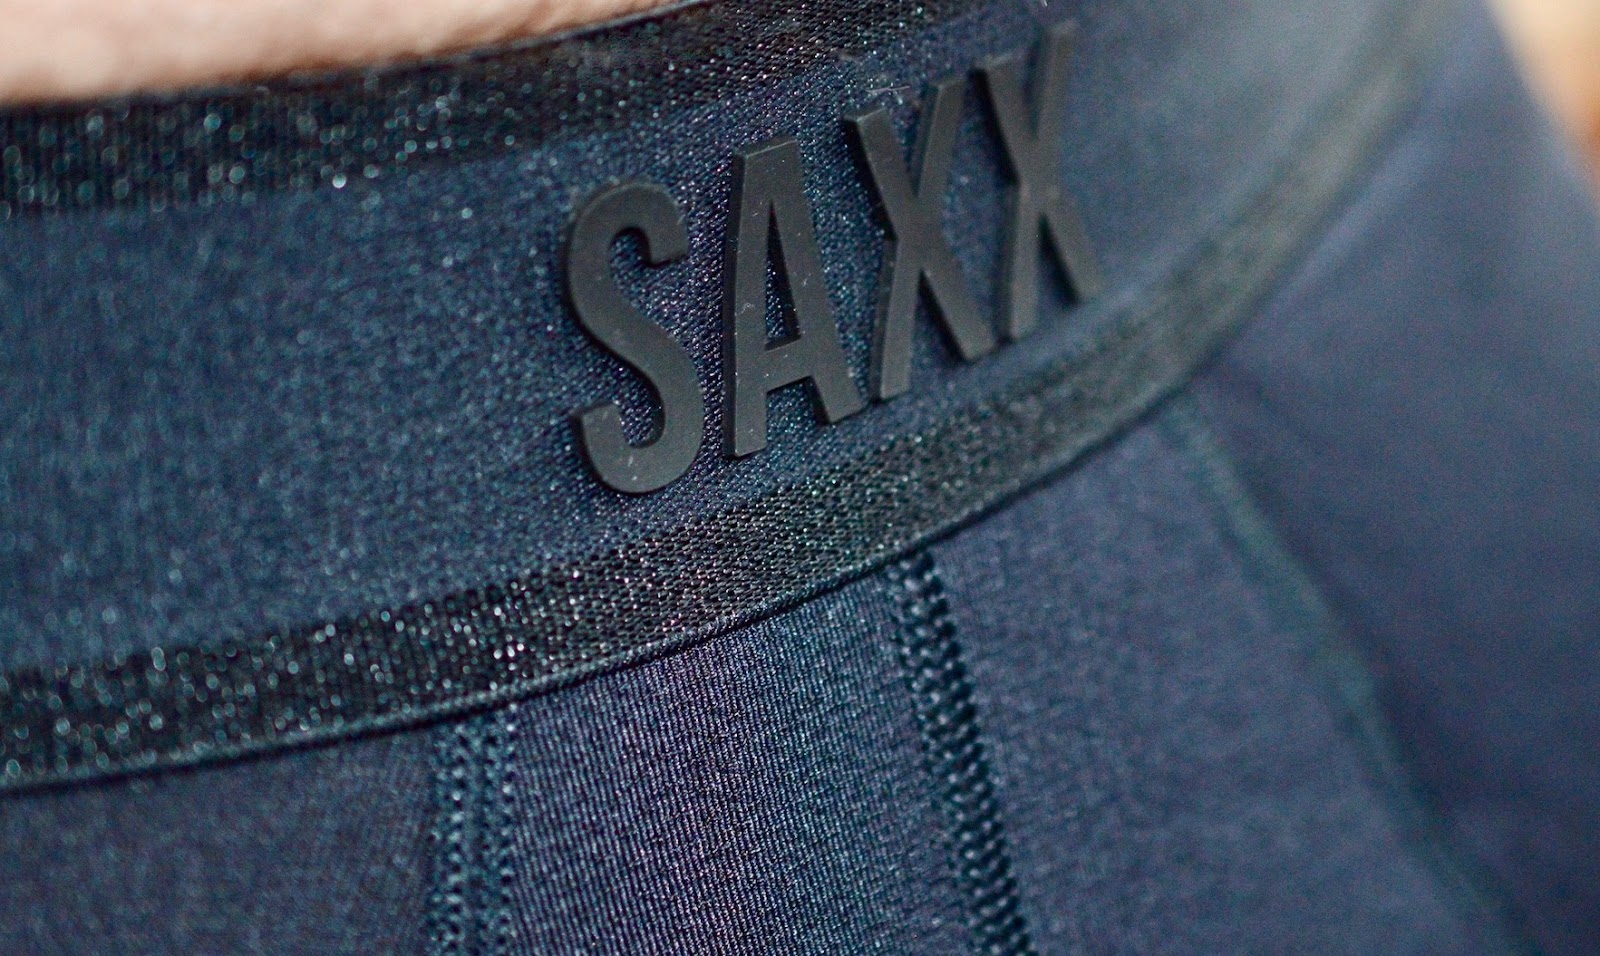 Saxx athletic underwear